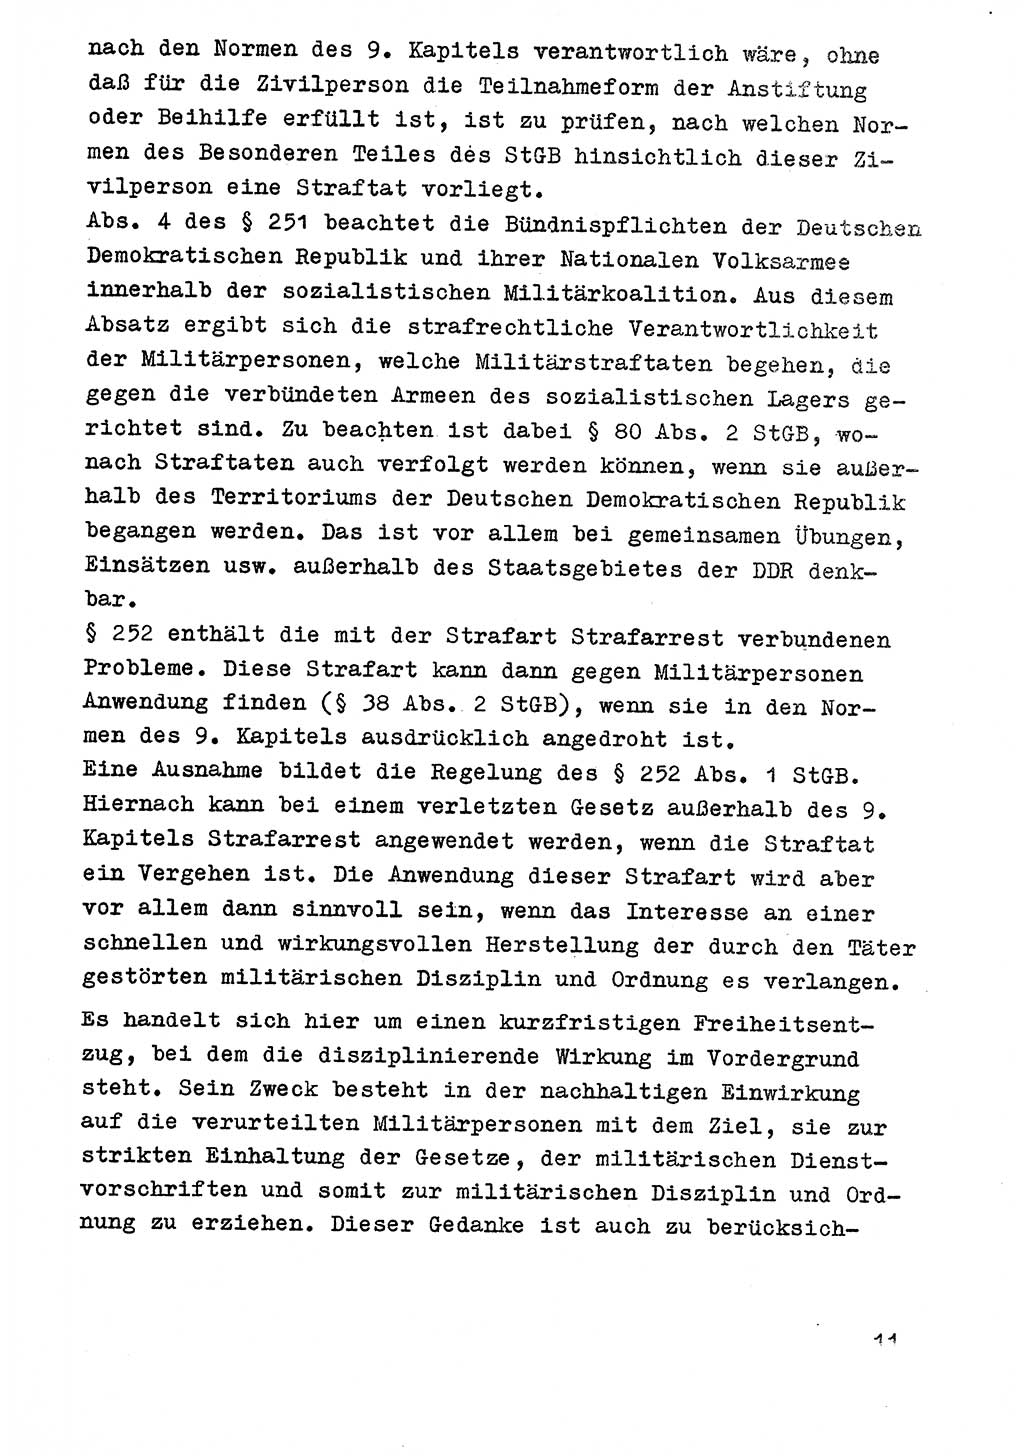 Strafrecht der DDR (Deutsche Demokratische Republik), Besonderer Teil, Lehrmaterial, Heft 9 1969, Seite 11 (Strafr. DDR BT Lehrmat. H. 9 1969, S. 11)